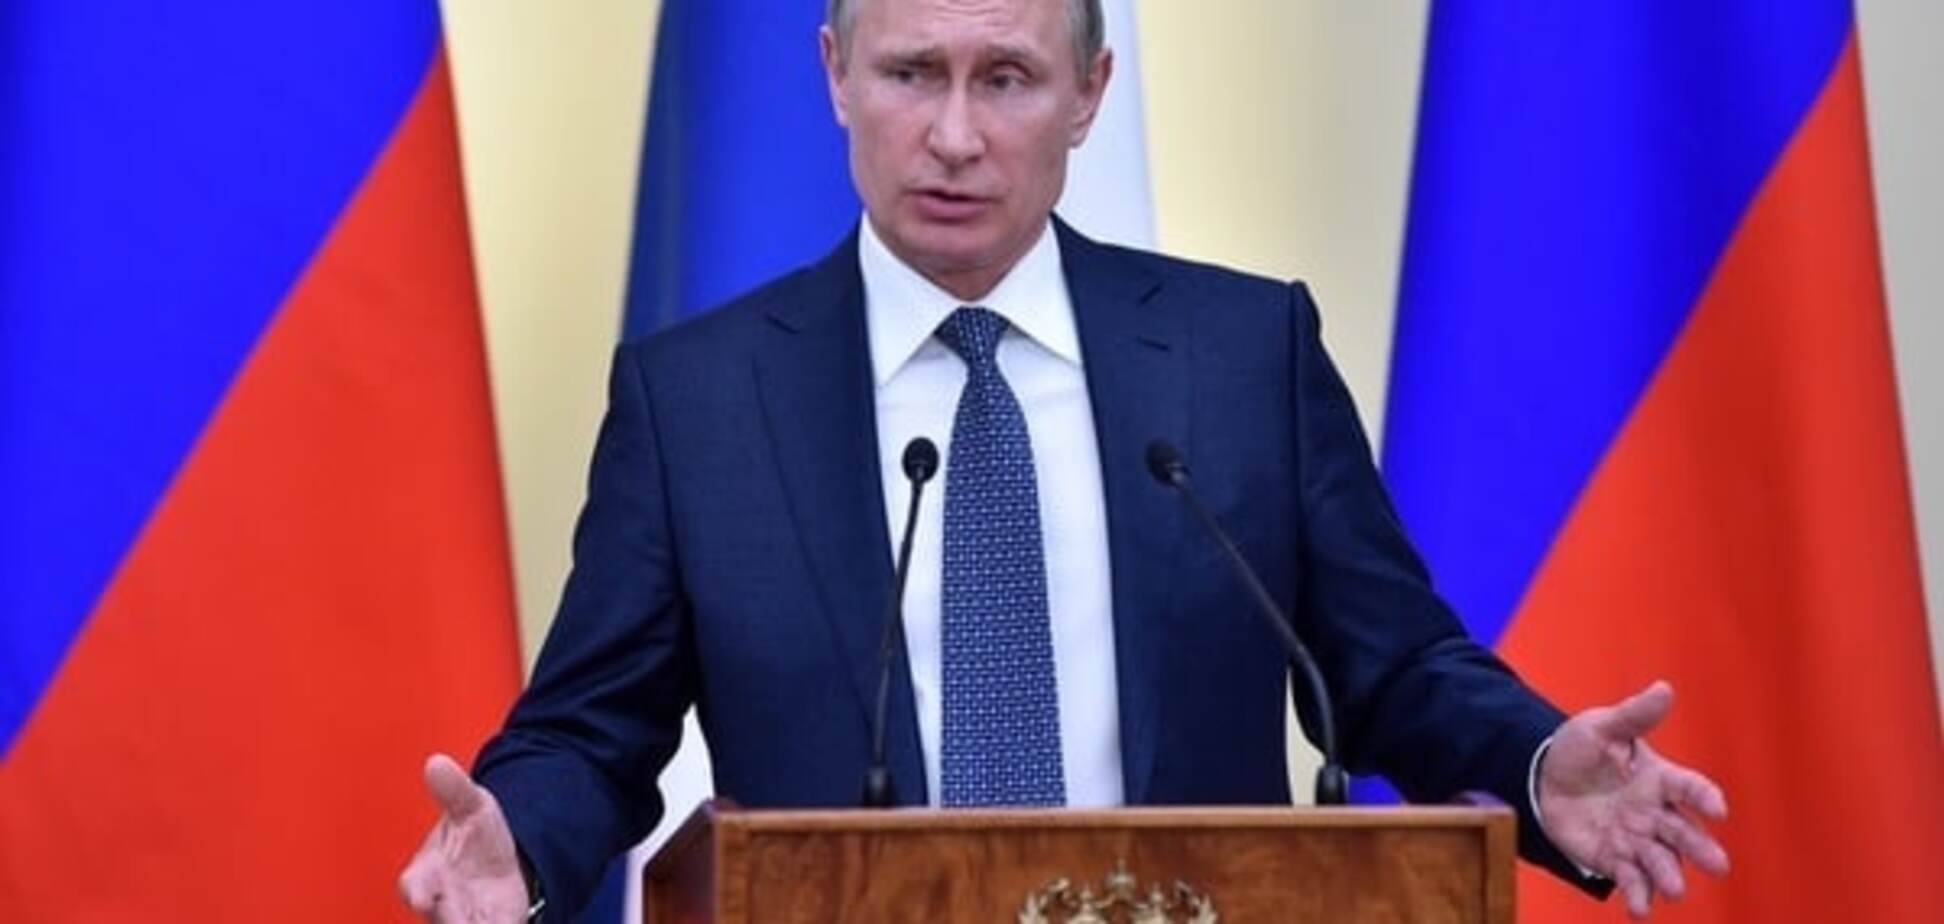 Прозріння: Путін побачив у Росії масштабні порушення прав і свобод громадян